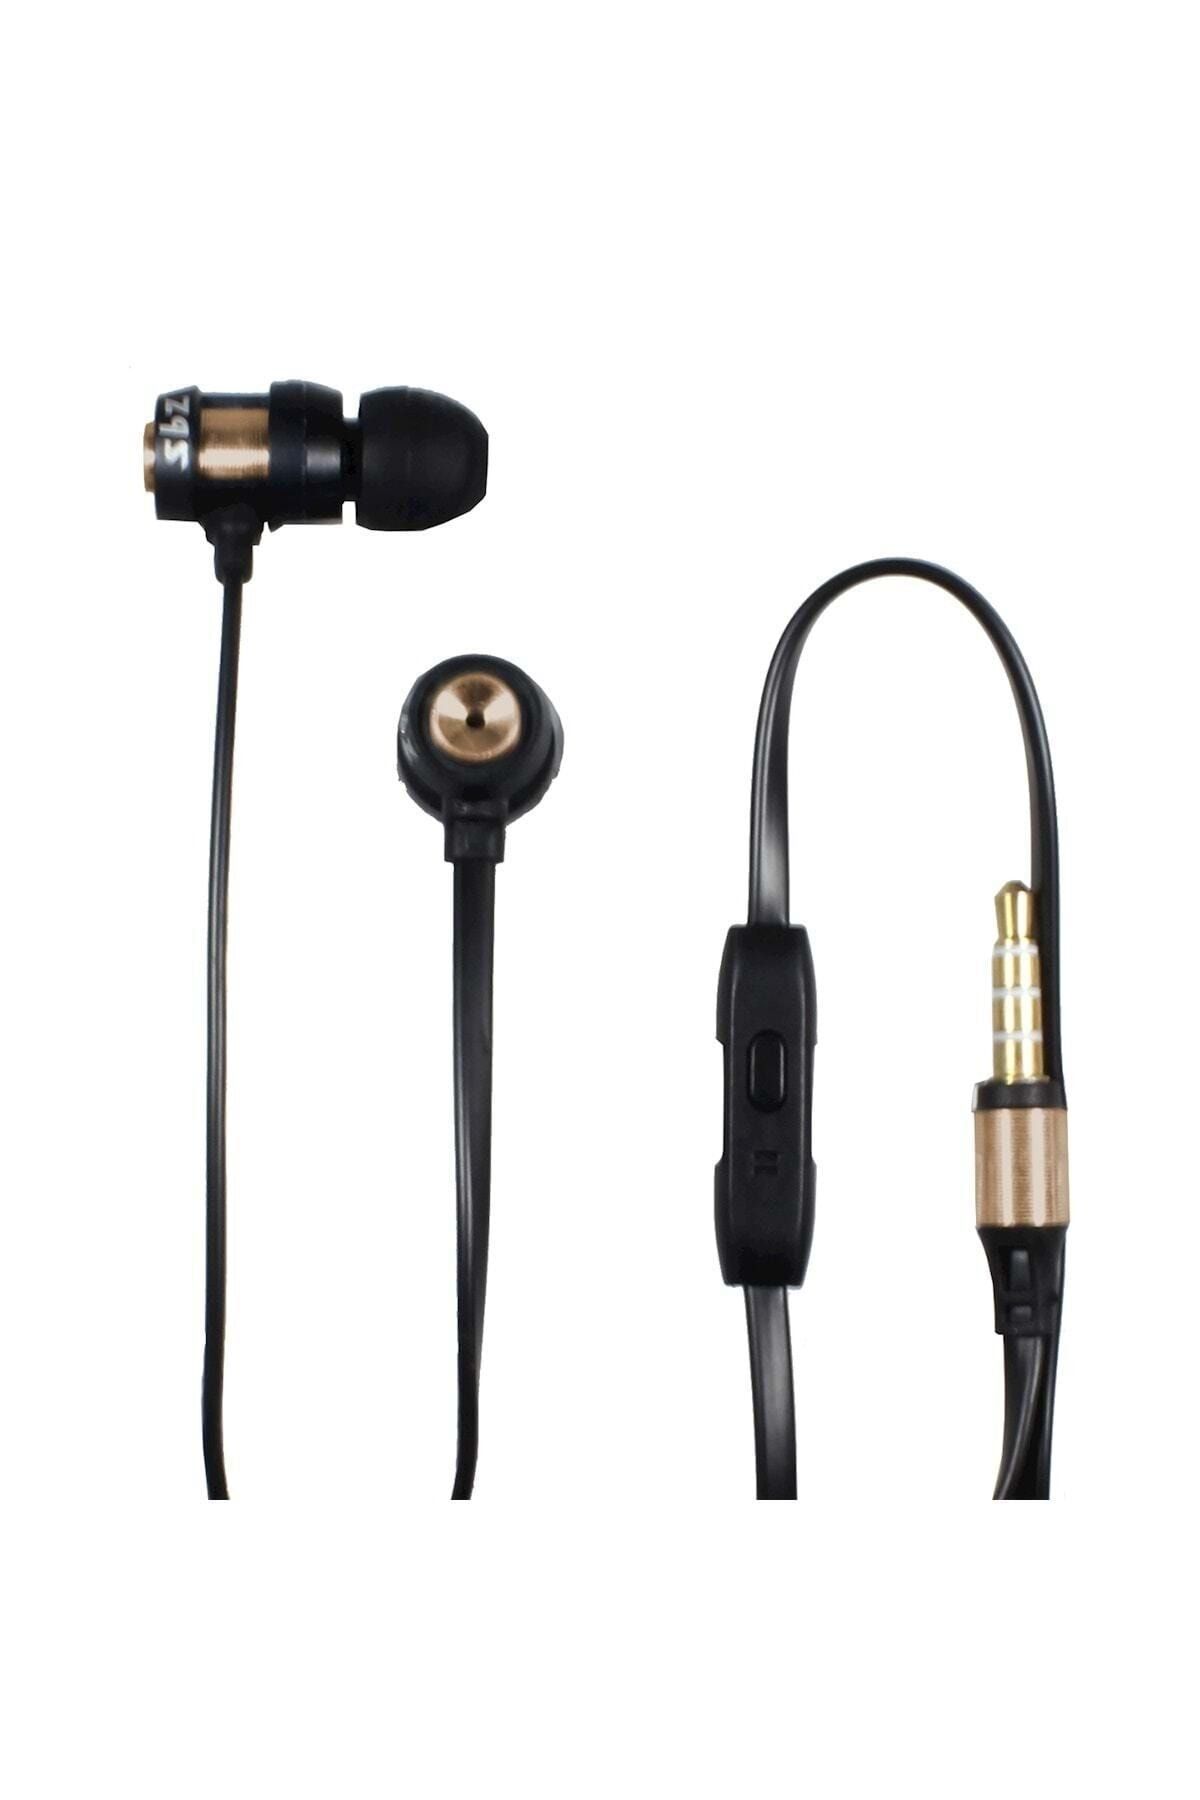 Subzero Pubg Mobile Oyuncu Kulaklığı Mikrofonlu Metal Kulaklık Ep84-gold